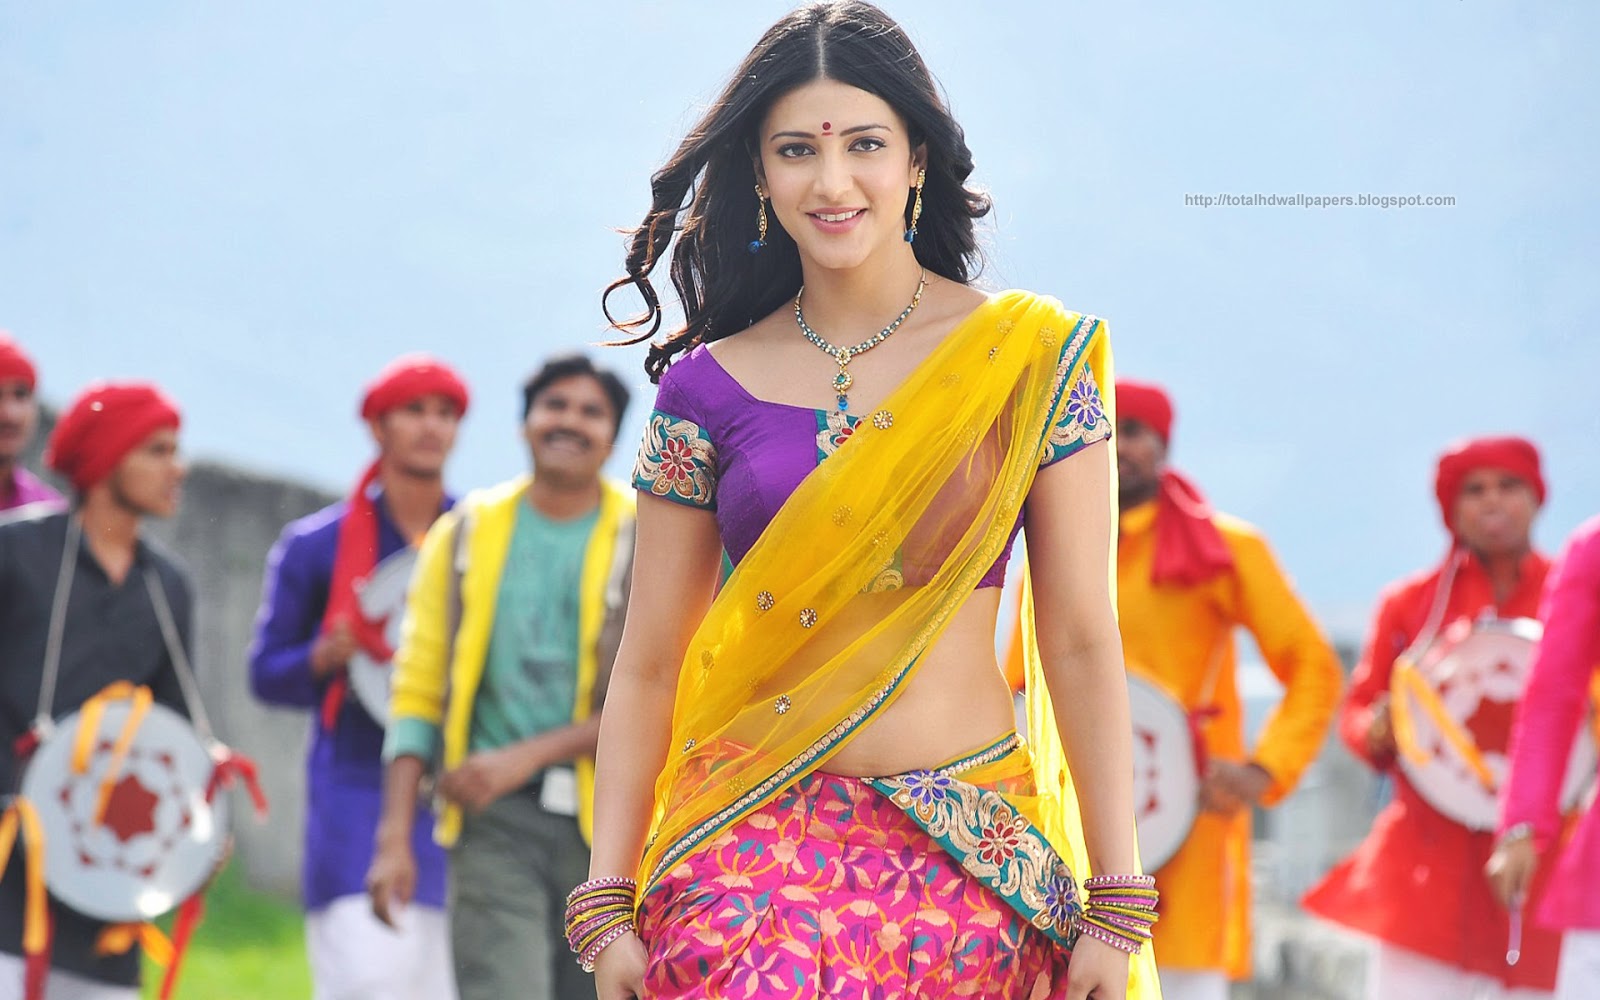 indian actress hd wallpapers 1080p,abdomen,sari,yellow,navel,trunk